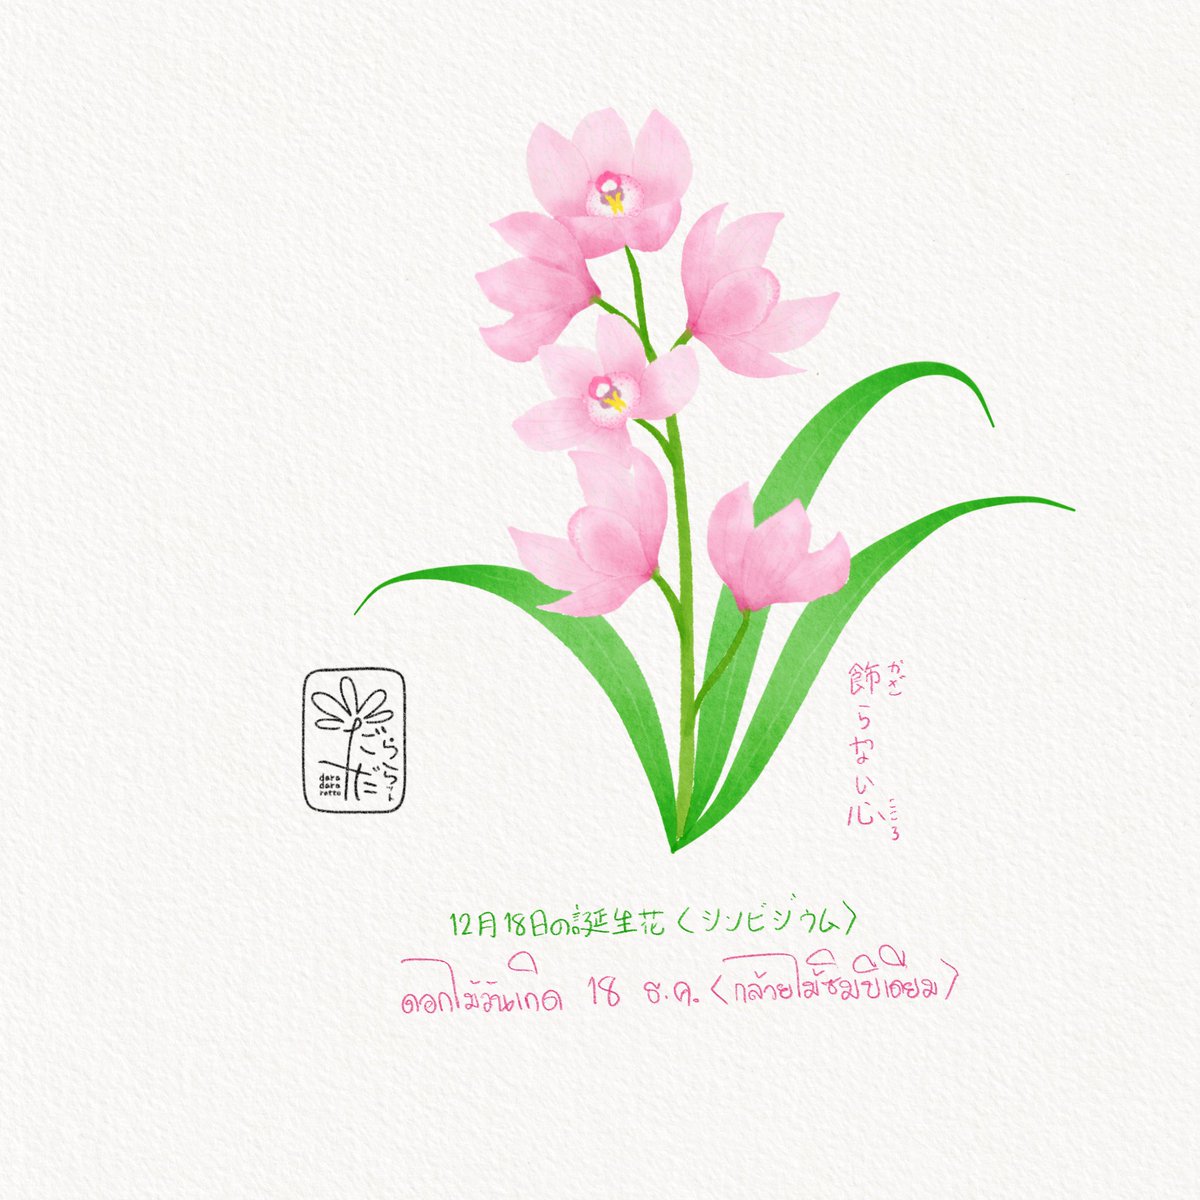 ดอกไม้วันเกิด 18 ธันวาคม “กล้วยไม้ซิมบิเดียม” ภาษาญี่ปุ่นเรียกว่า シンビジウム(ชิมบิจิอุมุ) ภาษาดอกไม้คือ หัวใจที่บริสุทธิ์ 12月18日の誕生花　“シンビジウム” 花言葉　“飾(かざ)らない心(こころ)” December 18th of birthday flower “Boat orchids” Flower meanings “Pure heart”